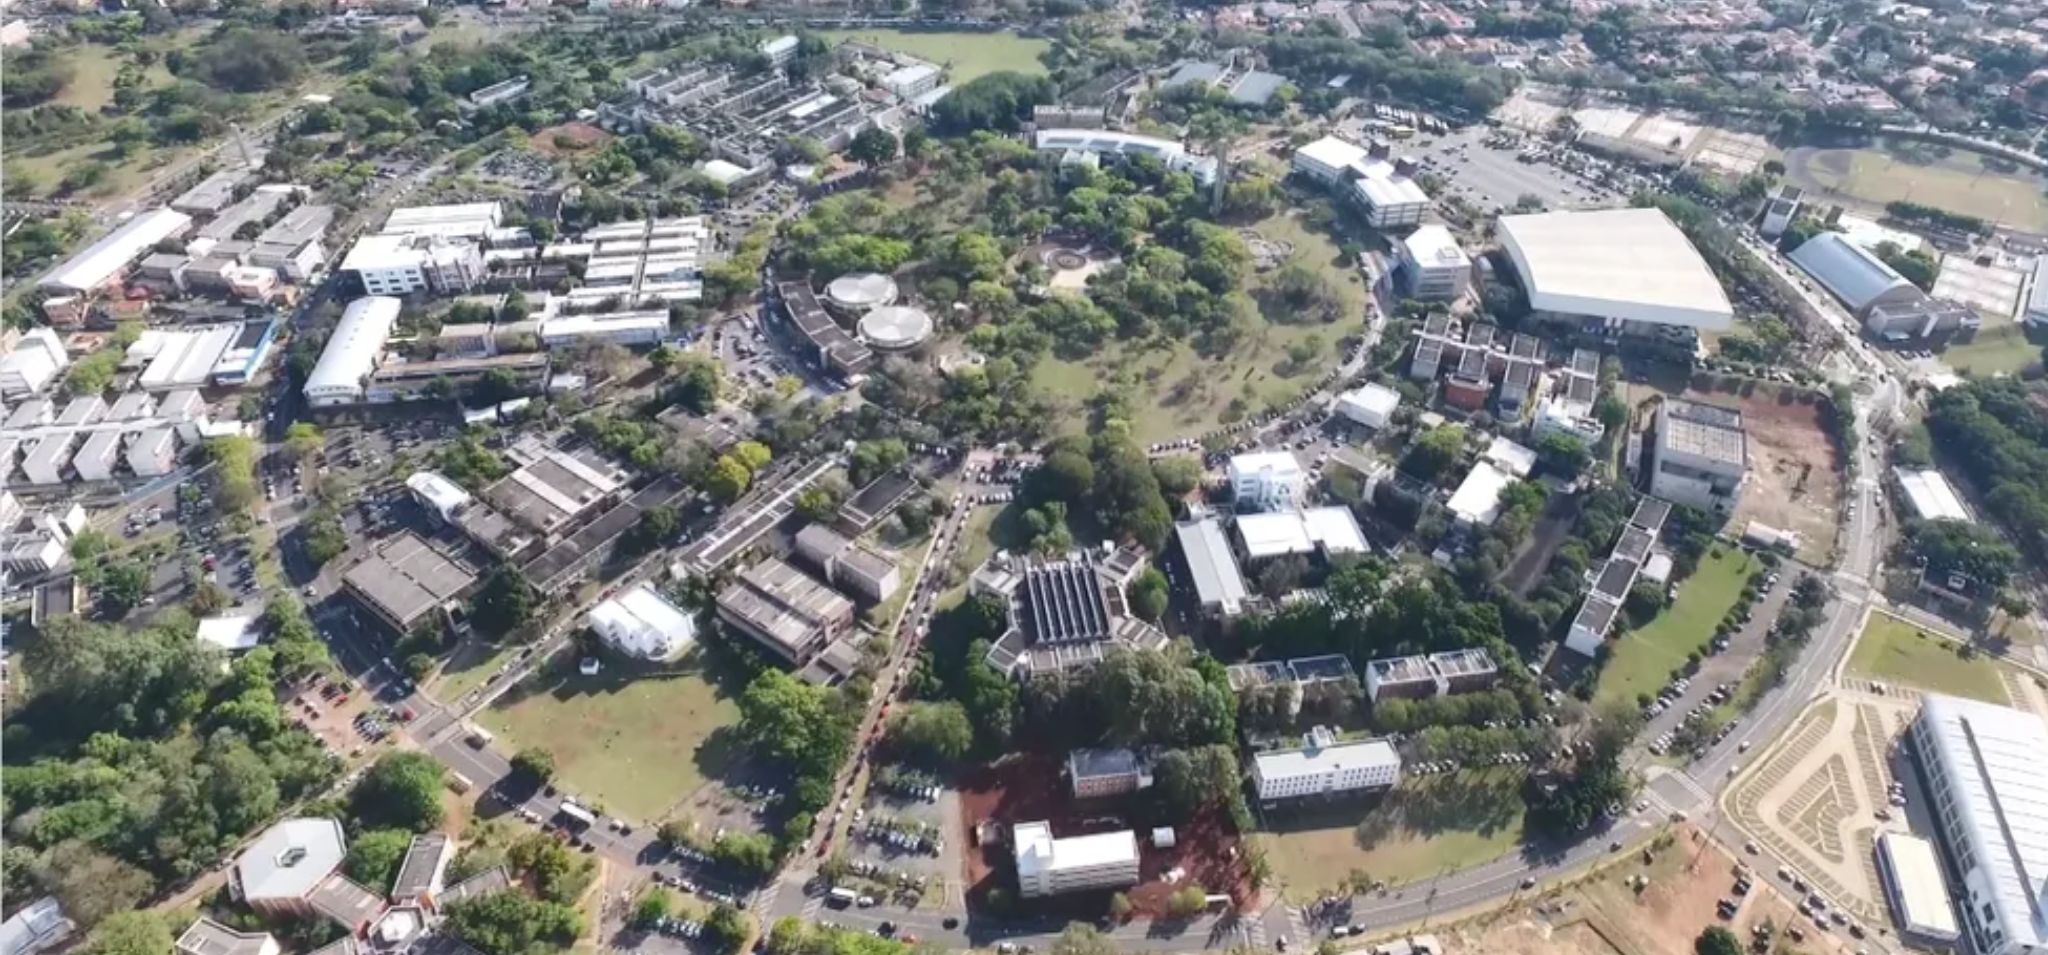 Vista aérea do campus da Unicamp